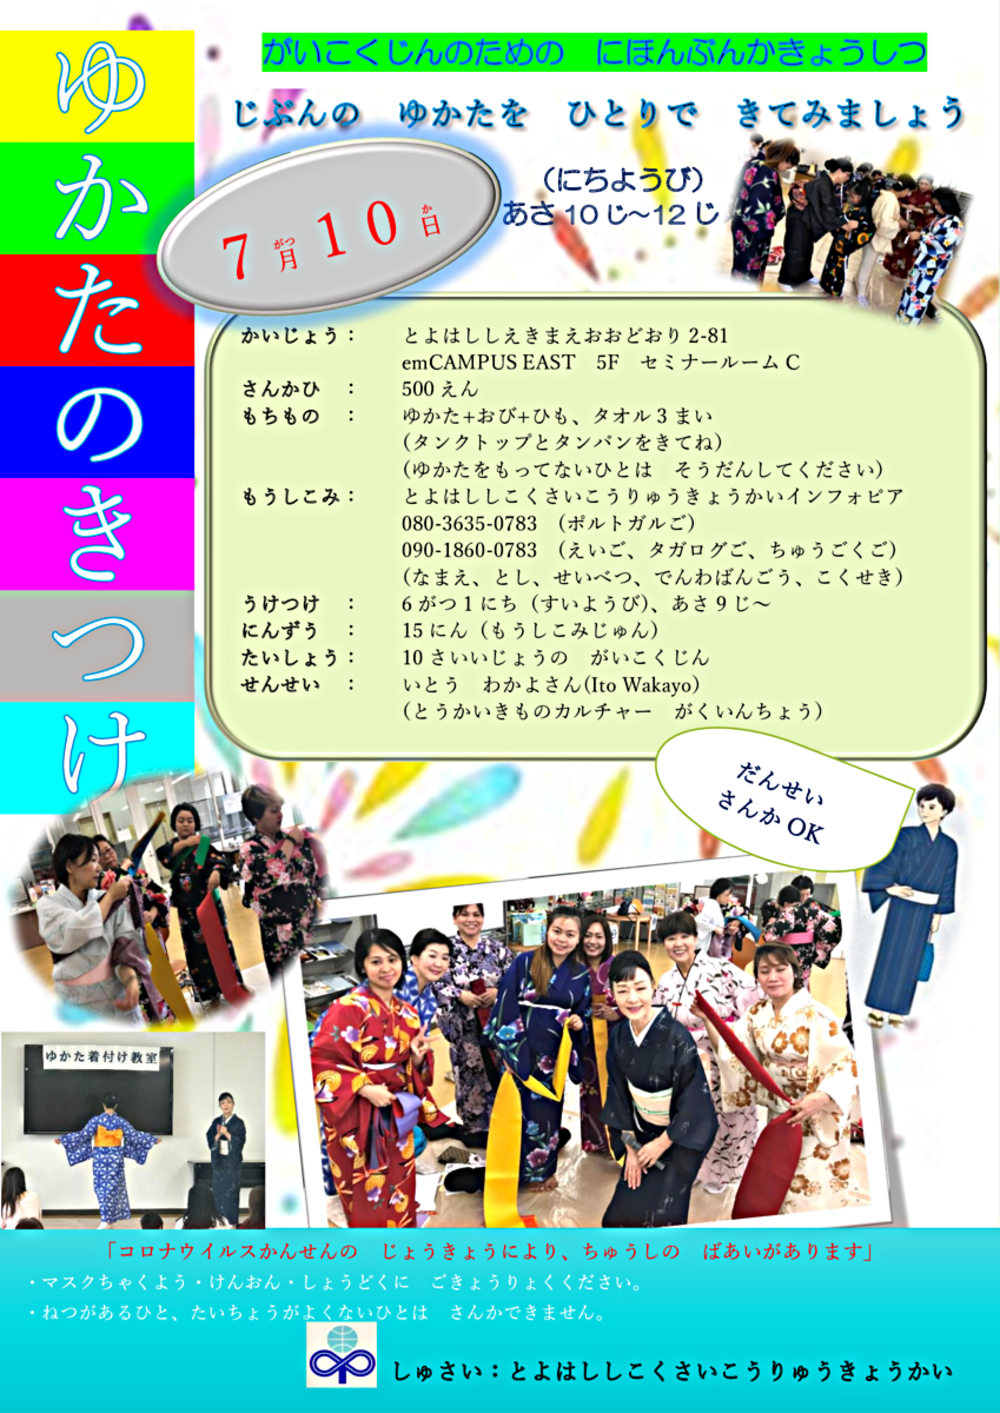 Aula de cultura japonesa para estrangeiros "Yukatakitsuki"